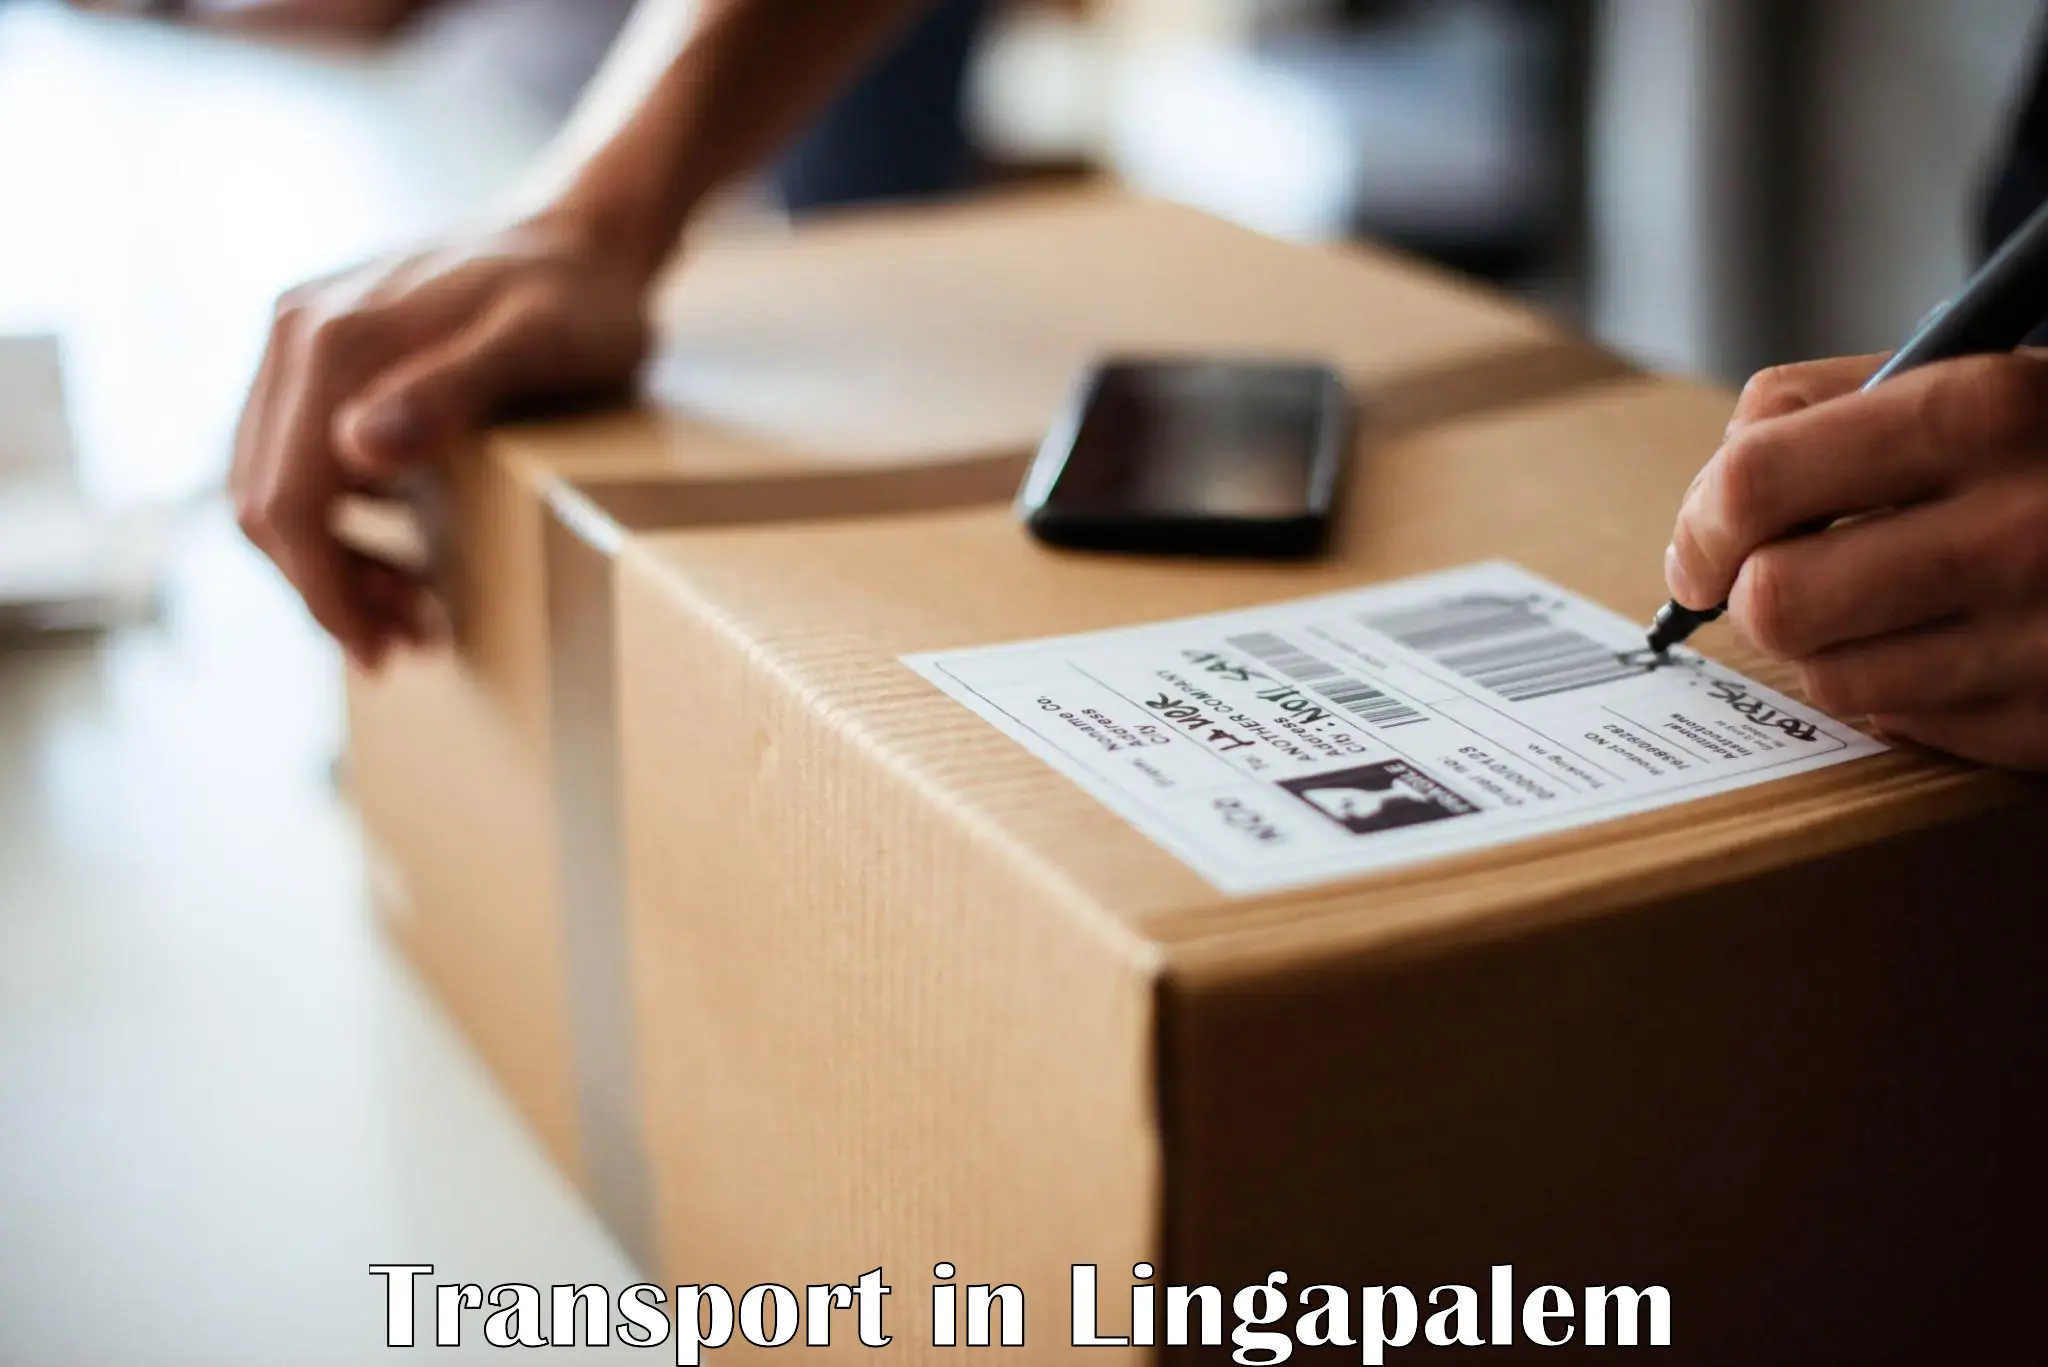 Furniture transport service in Lingapalem